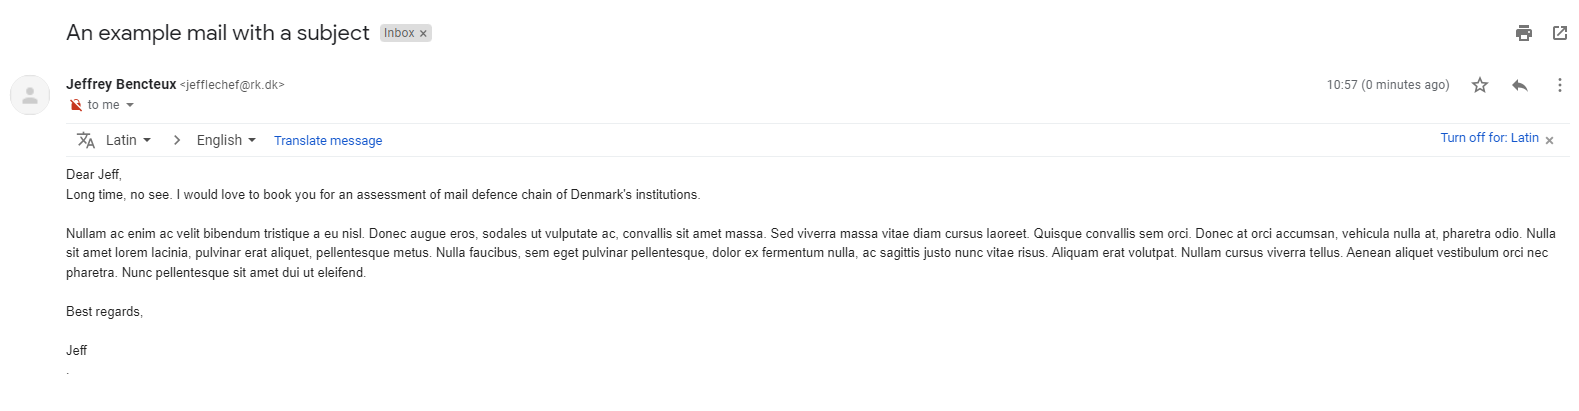 rk.dk gmail inbox